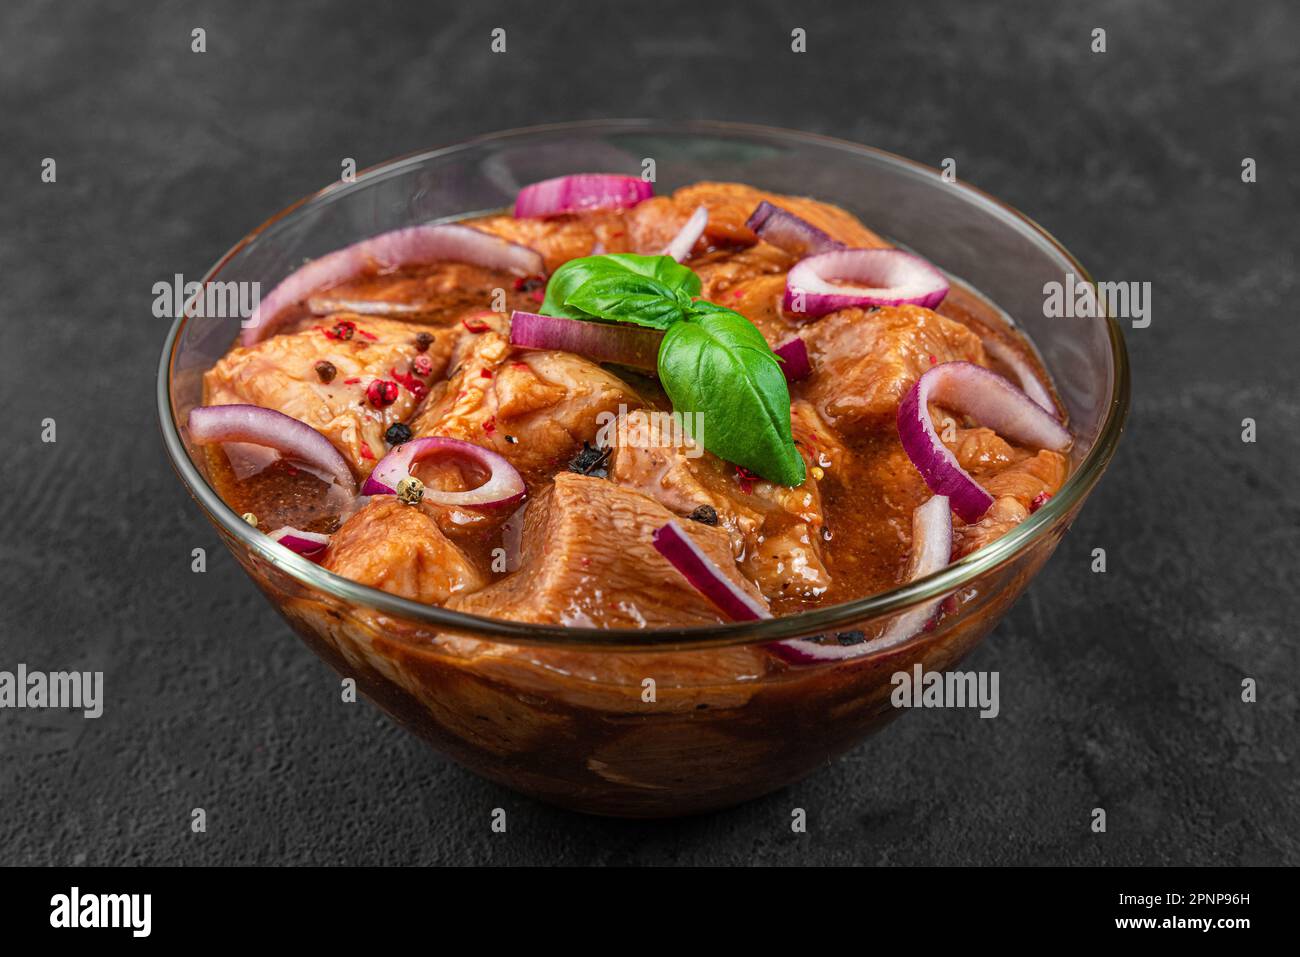 Viande de porc ou de bœuf crue en marinade sur fond noir. Cuisine pour barbecue ou barbecue. Shashlik, shish kebab Banque D'Images